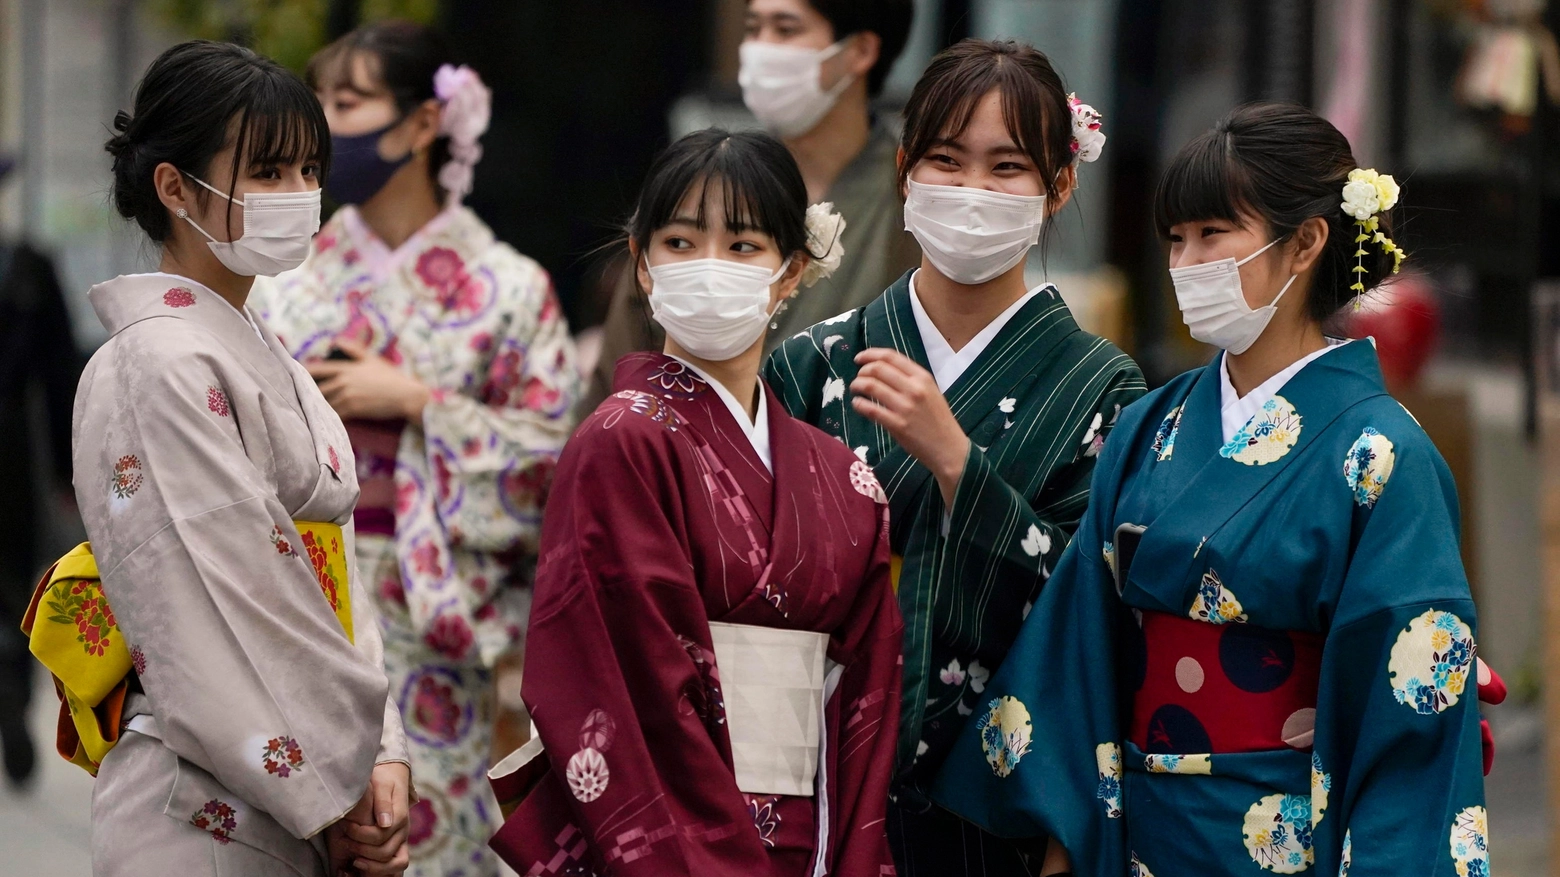 Un gruppo di ragazze giapponesi col tradizionale kimono e la mascherina (Ansa)